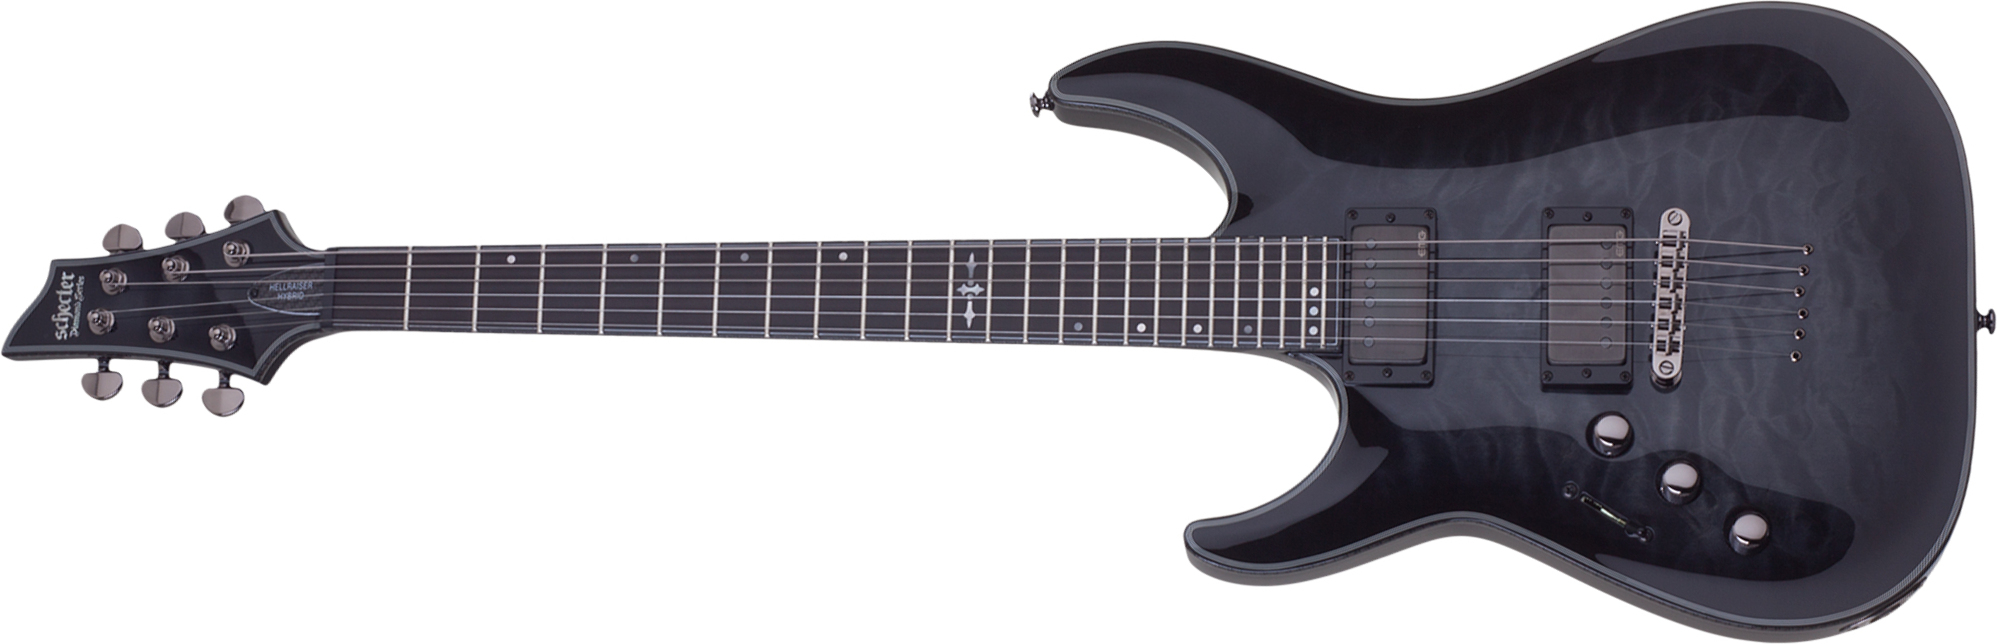 Schecter C-1 Hellraiser Hybrid Lh Gaucher 2h Emg Ht Eb - Trans. Black Burst - Guitarra electrica para zurdos - Main picture